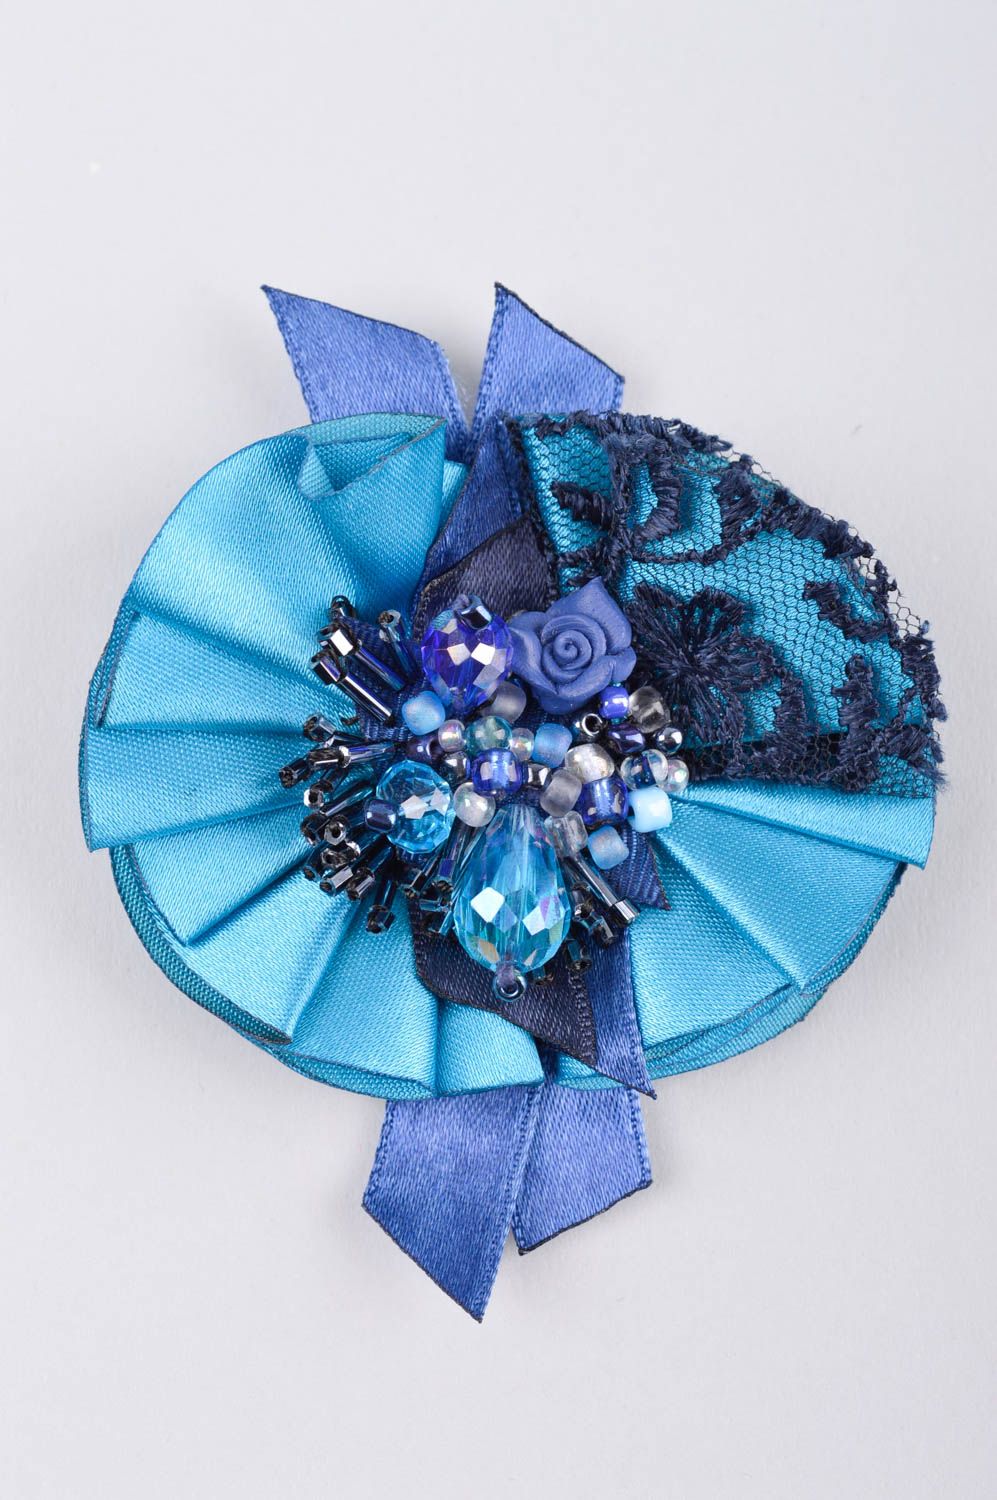 Брошь ручной работы голубая украшение из ткани с кружевом дизайнерское украшение фото 2